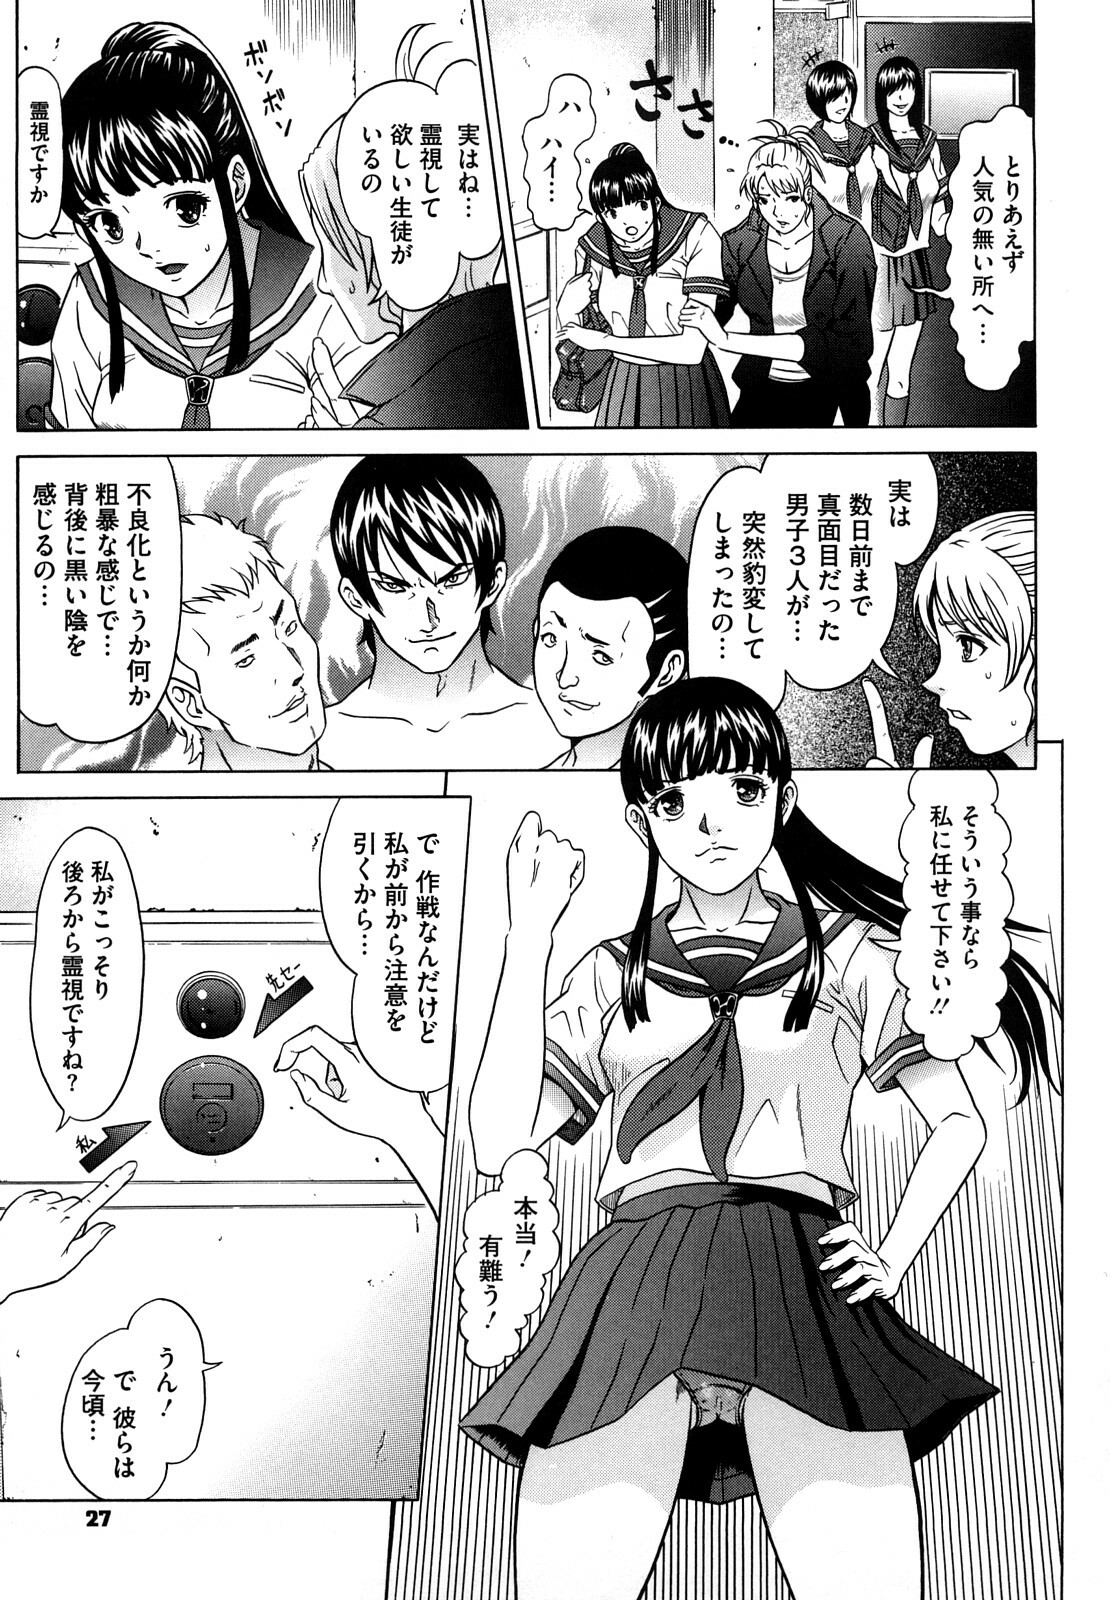 [Kurono Masakado] Nocturnal page 28 full